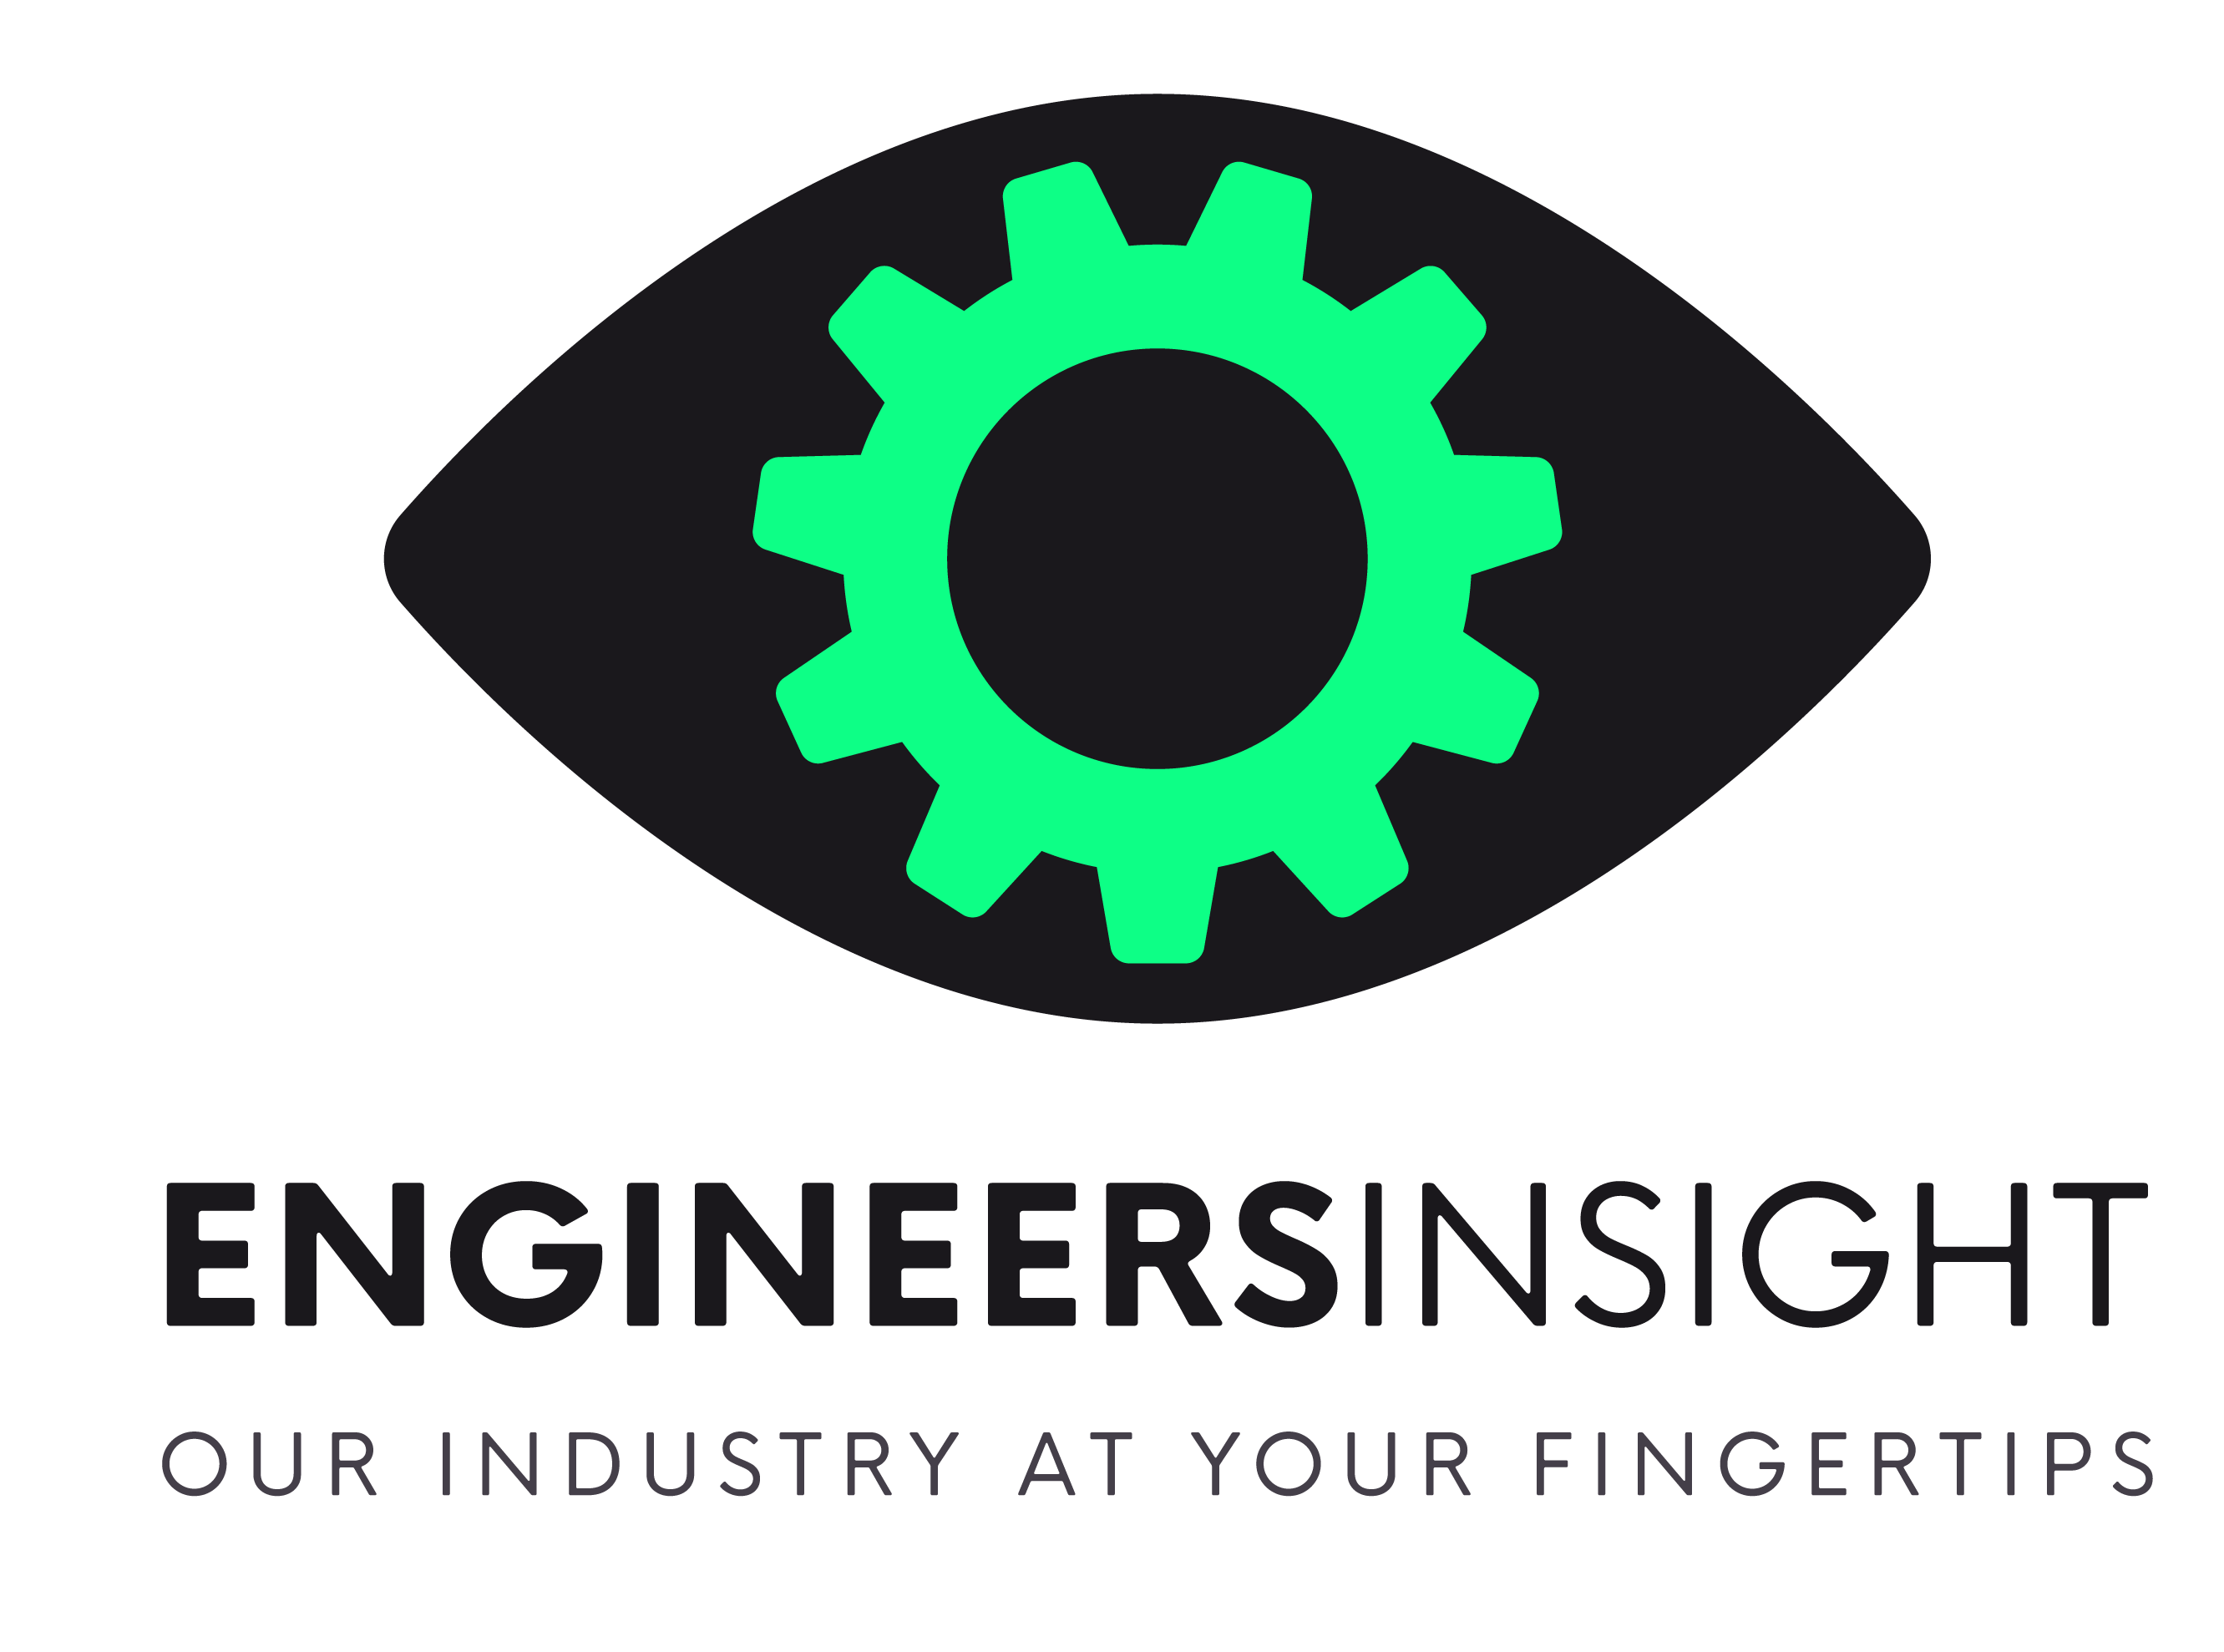 Engineers insight logo